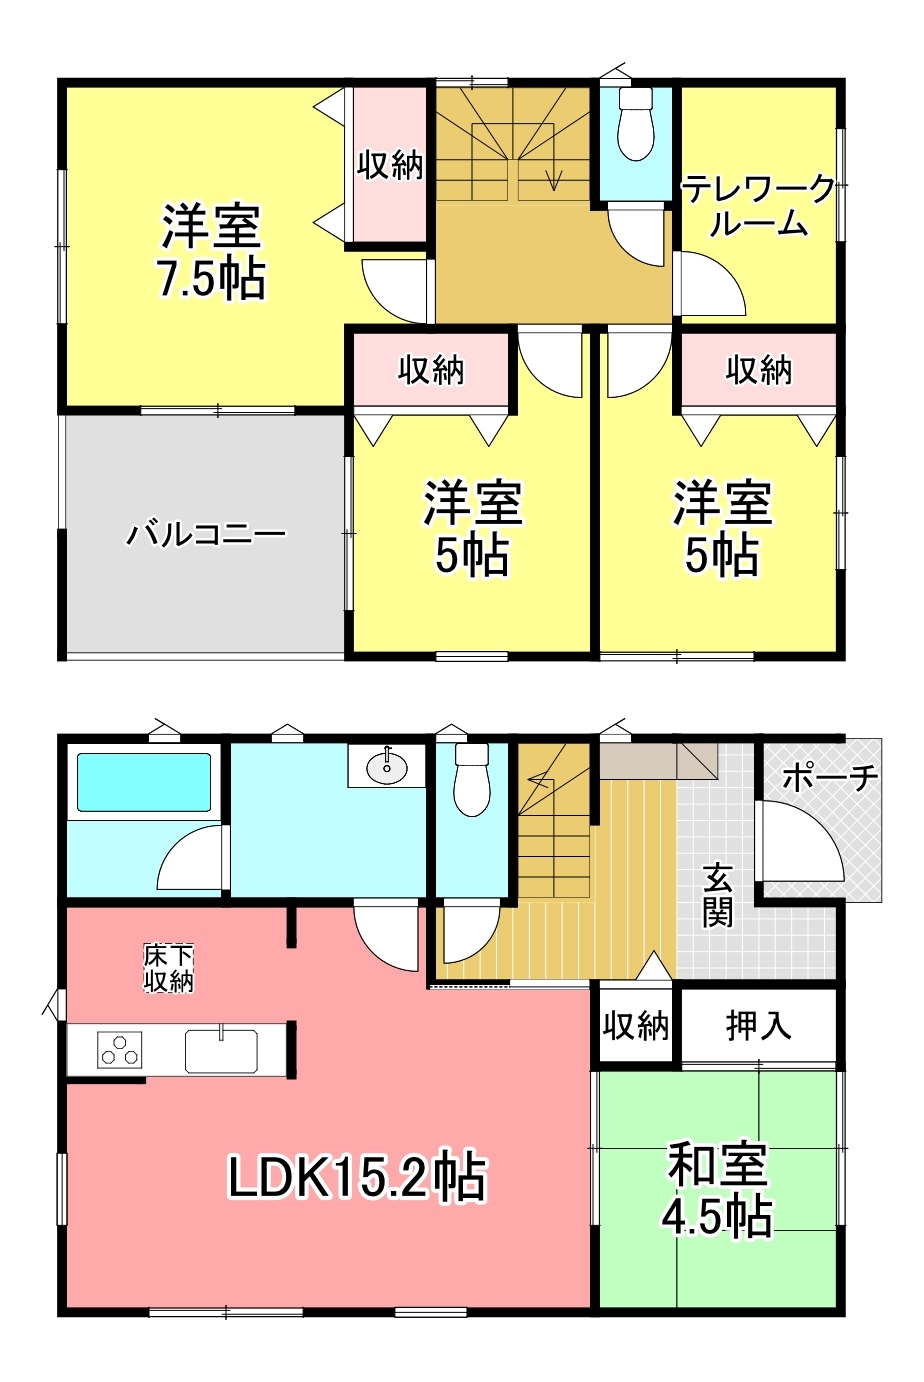 静岡県富士市岩本の新築一戸建て 2199万円 の不動産 住宅の物件詳細 ハウスドゥ Com Sp スマートフォンサイト